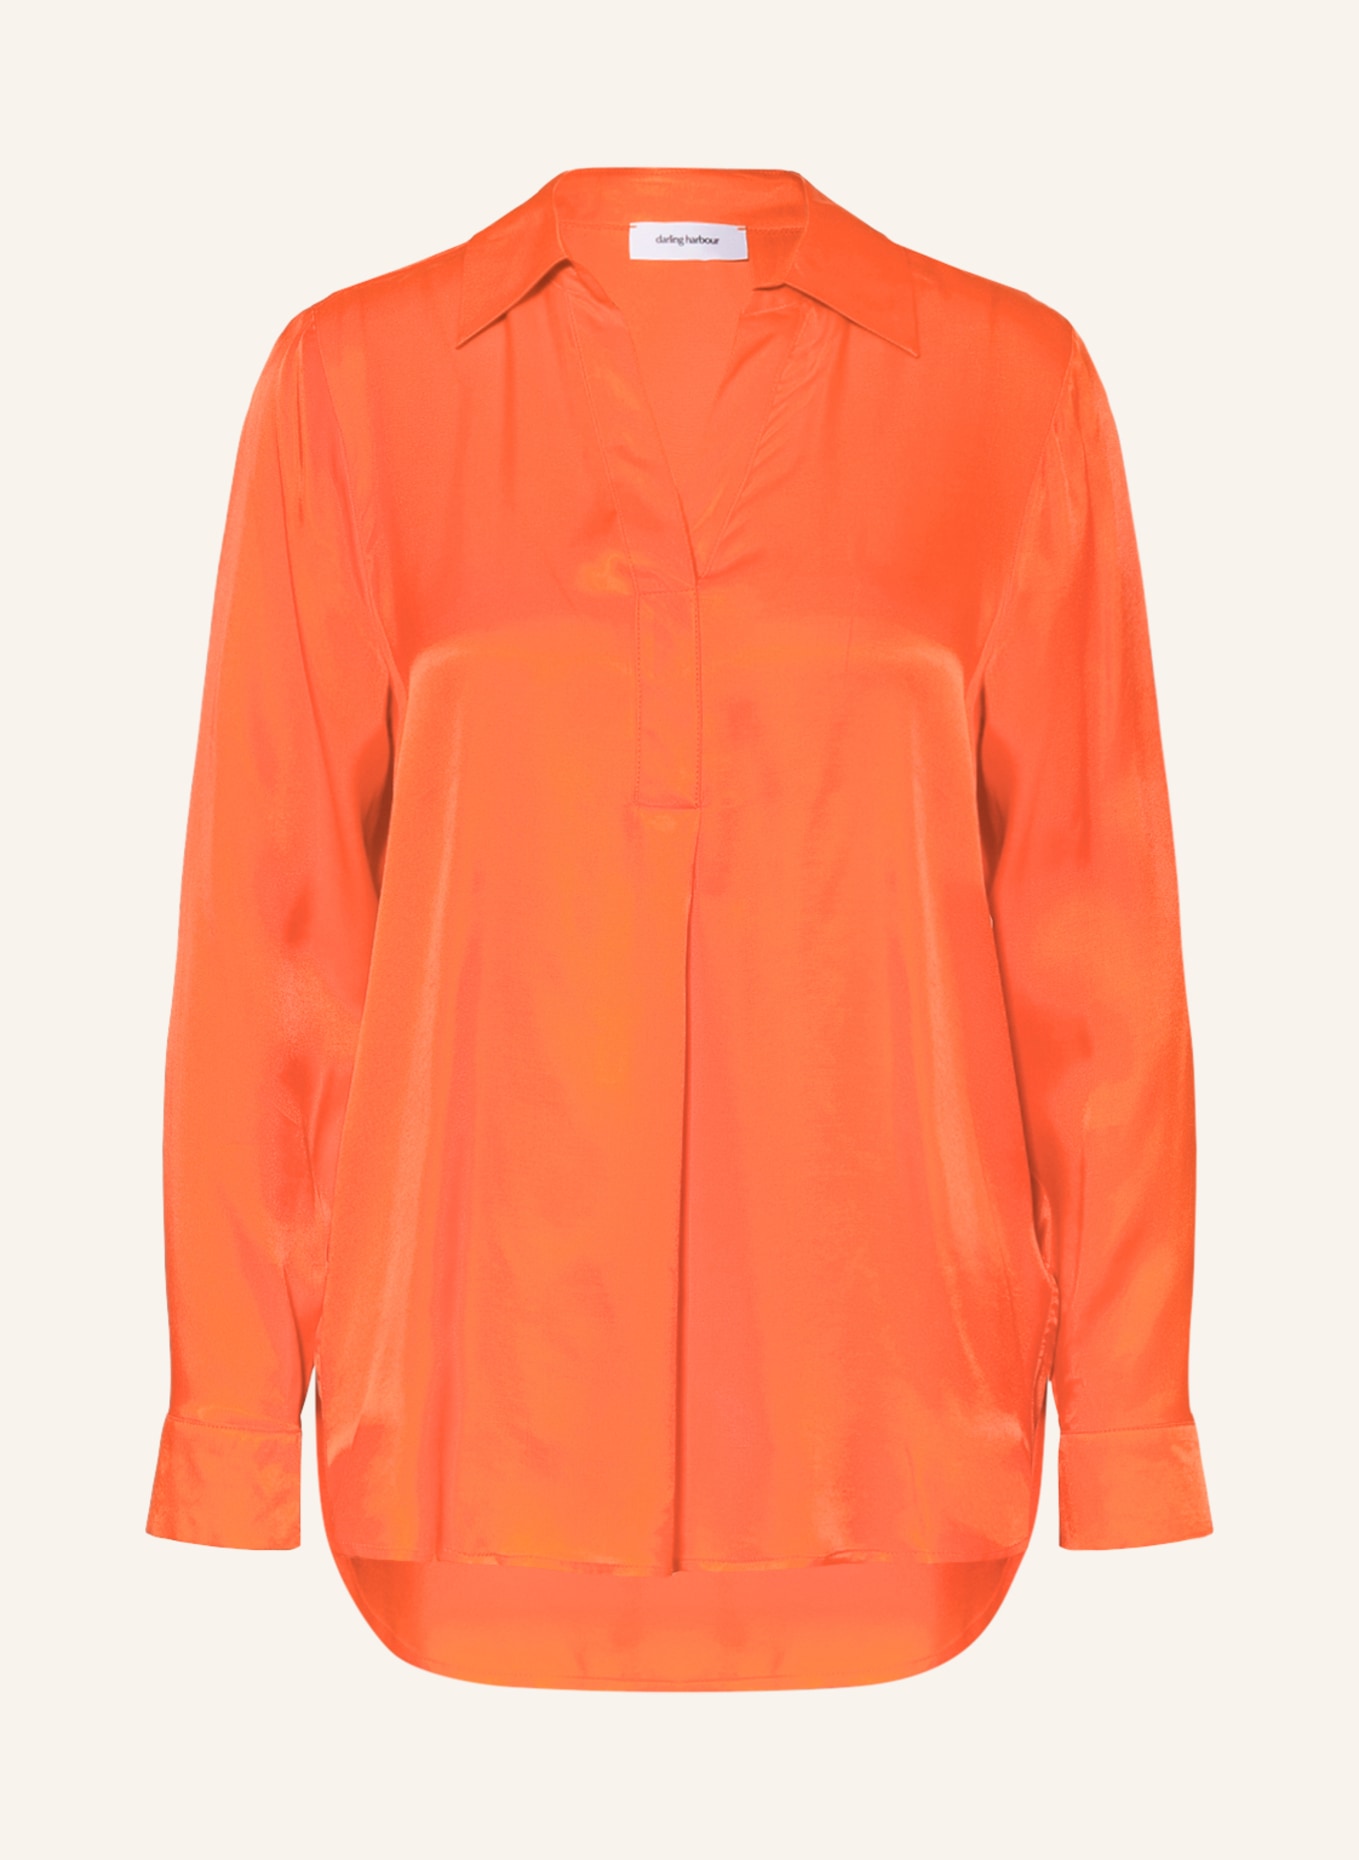 darling harbour Shirt blouse, Color: ORANGE (Image 1)